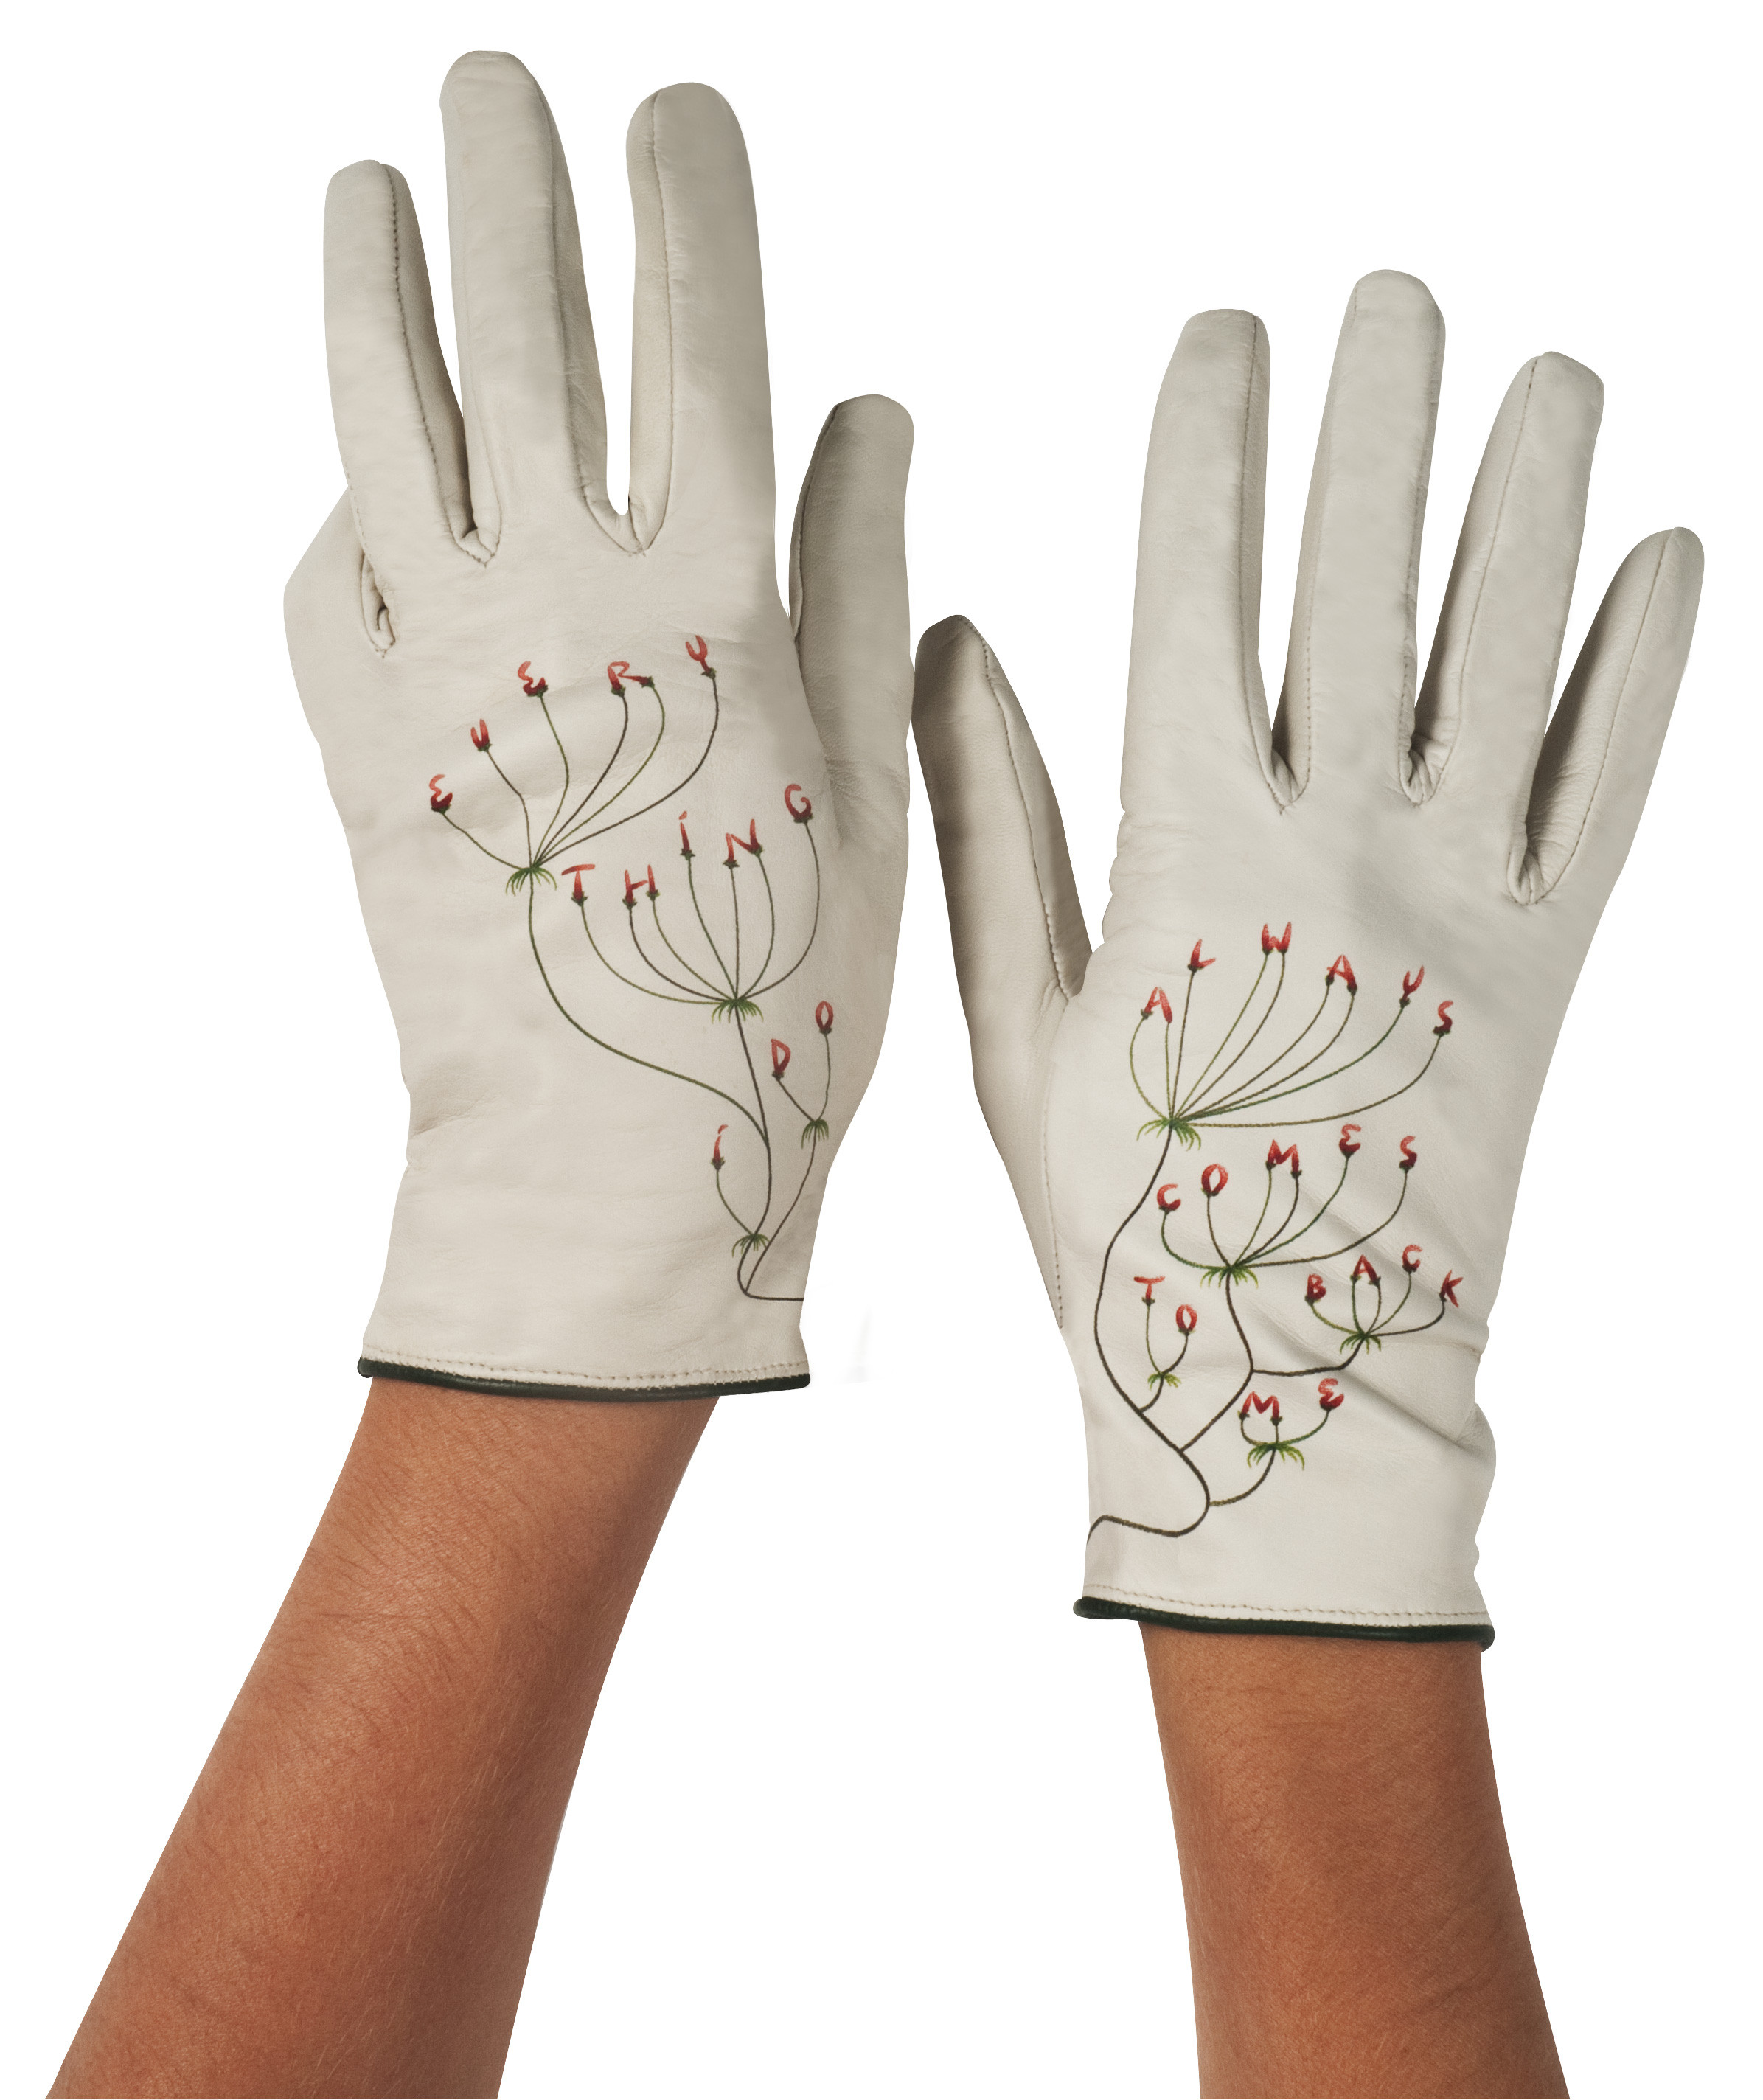 Typographic Gloves